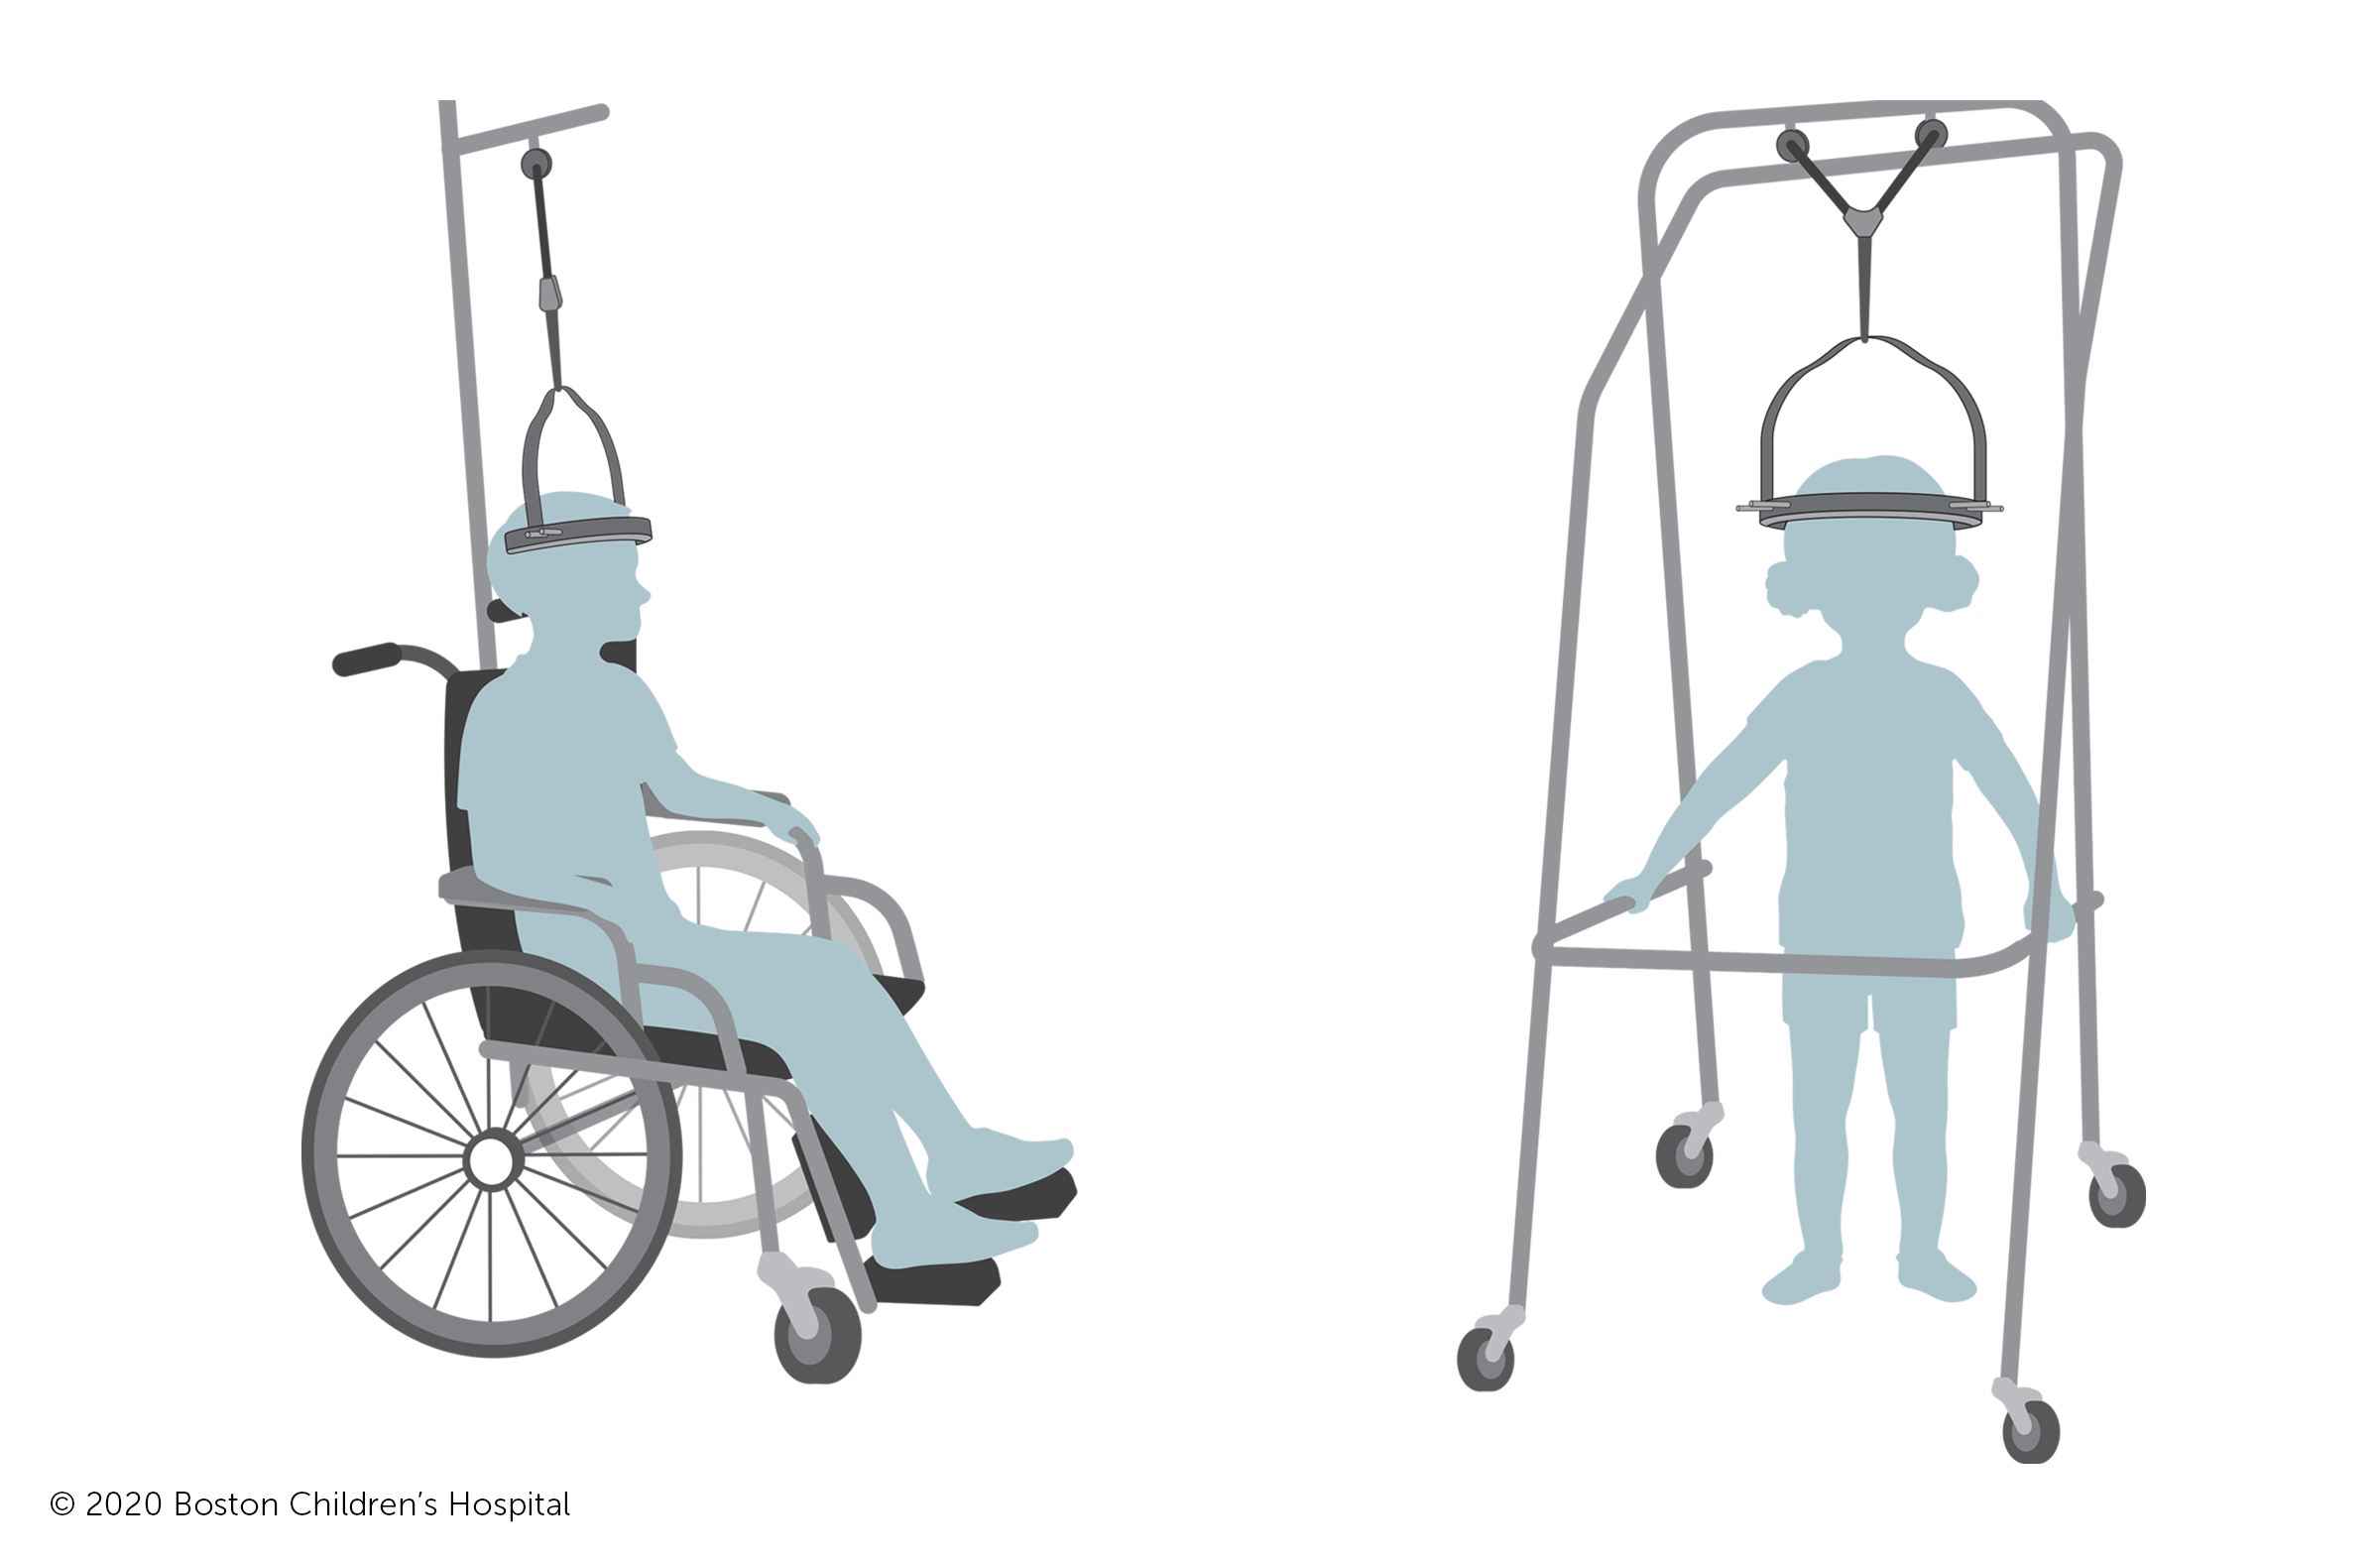 接受晕轮牵引的儿童可以乘坐特殊的轮椅和助行器在医院走动。